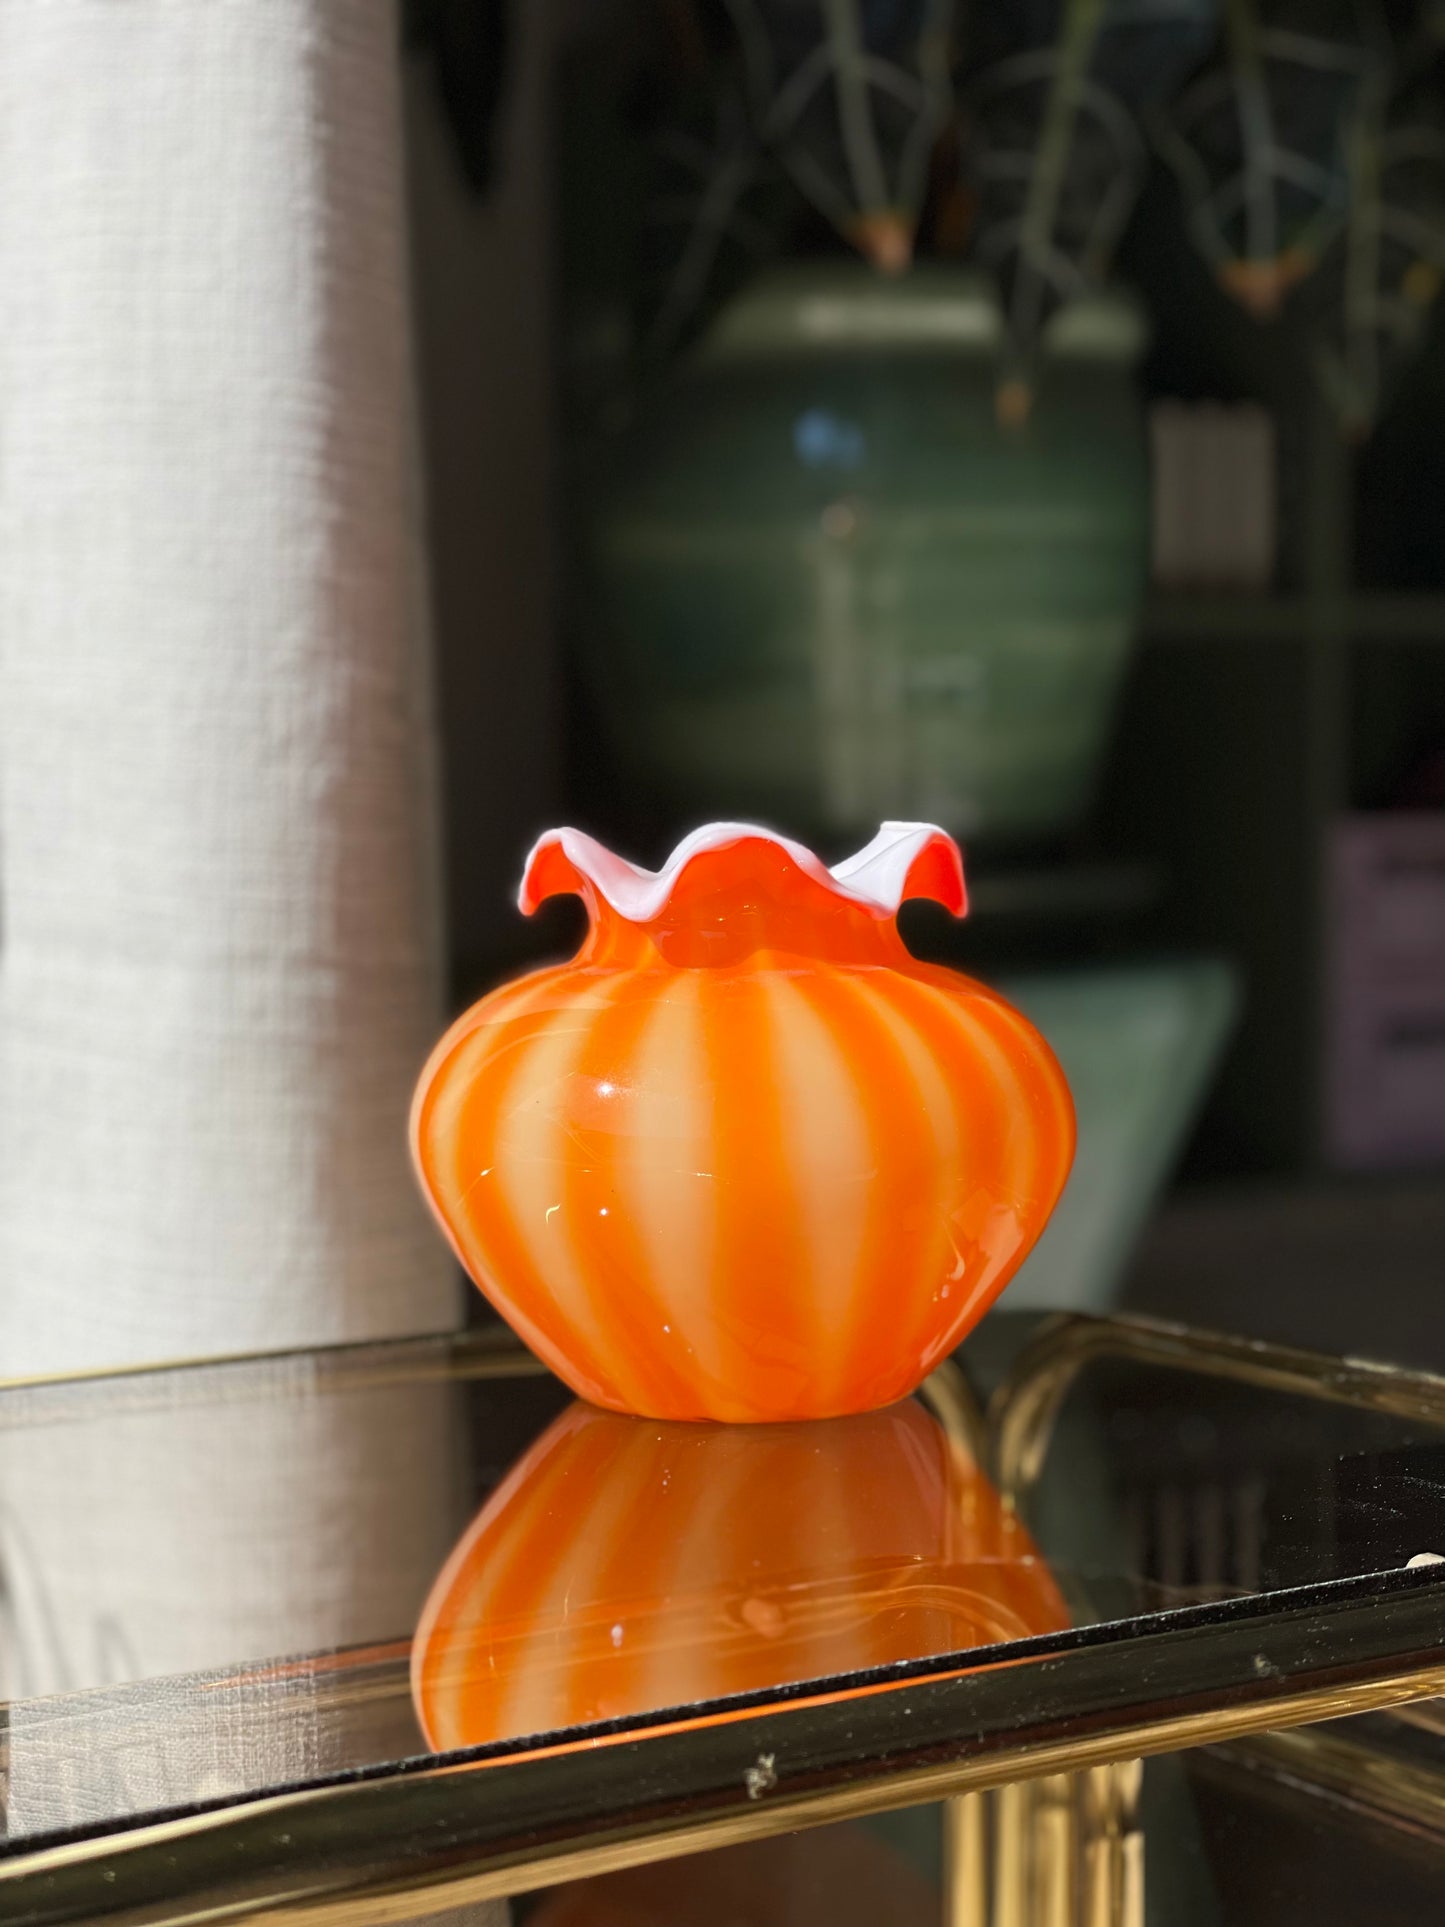 Orange chubby glass vase with fringed edge